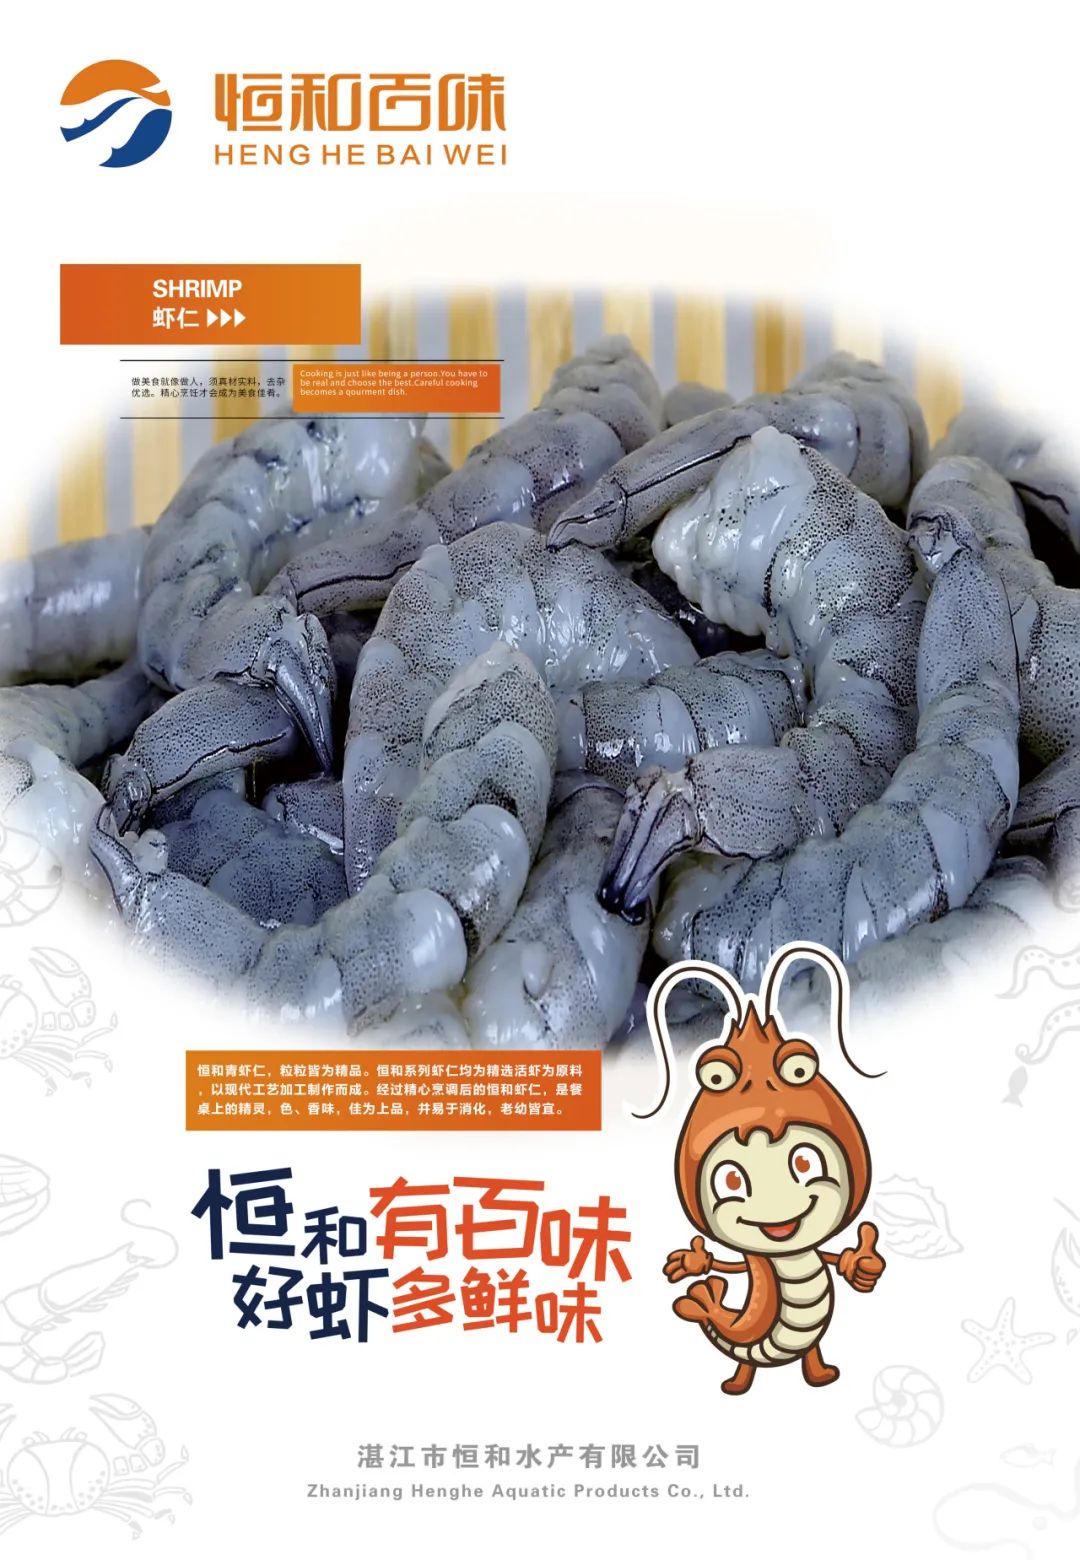 湛江市恒和水产有限公司——恒和有百味，好虾多鲜味(图8)